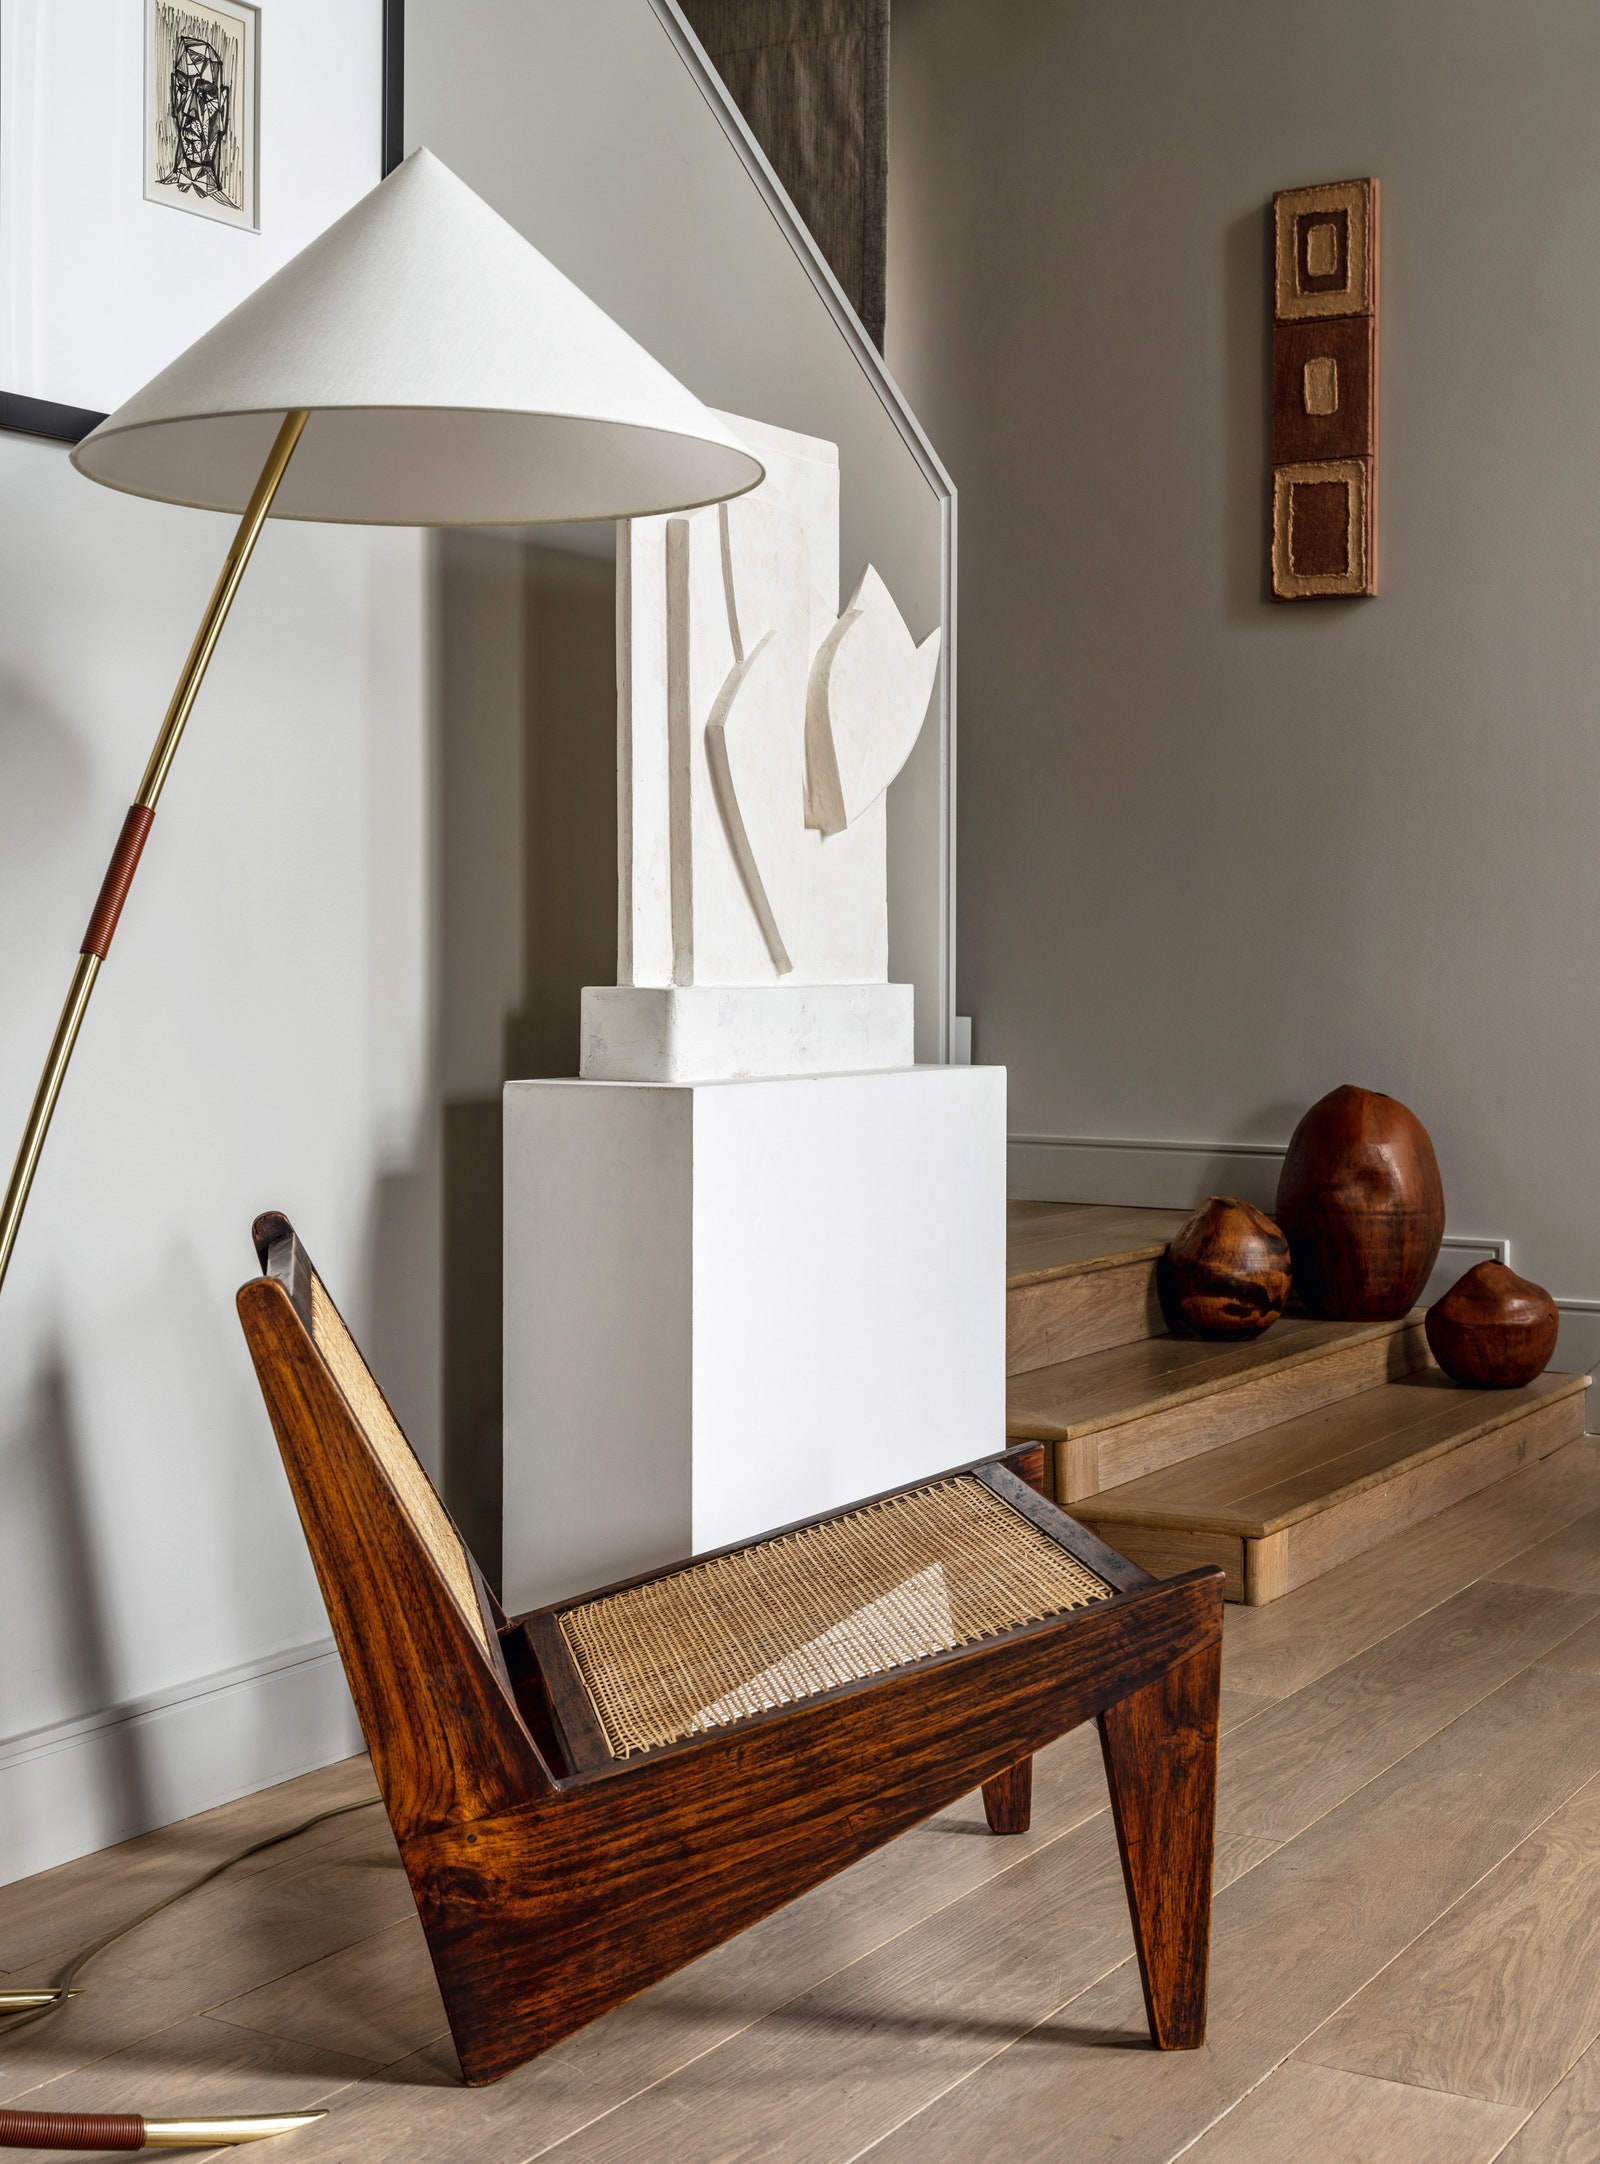 Кресло “Кенгуру” по дизайну Пьера Жаннере 1950х годов торшер Руперта Николла того же периода и гипсовая скульптура...